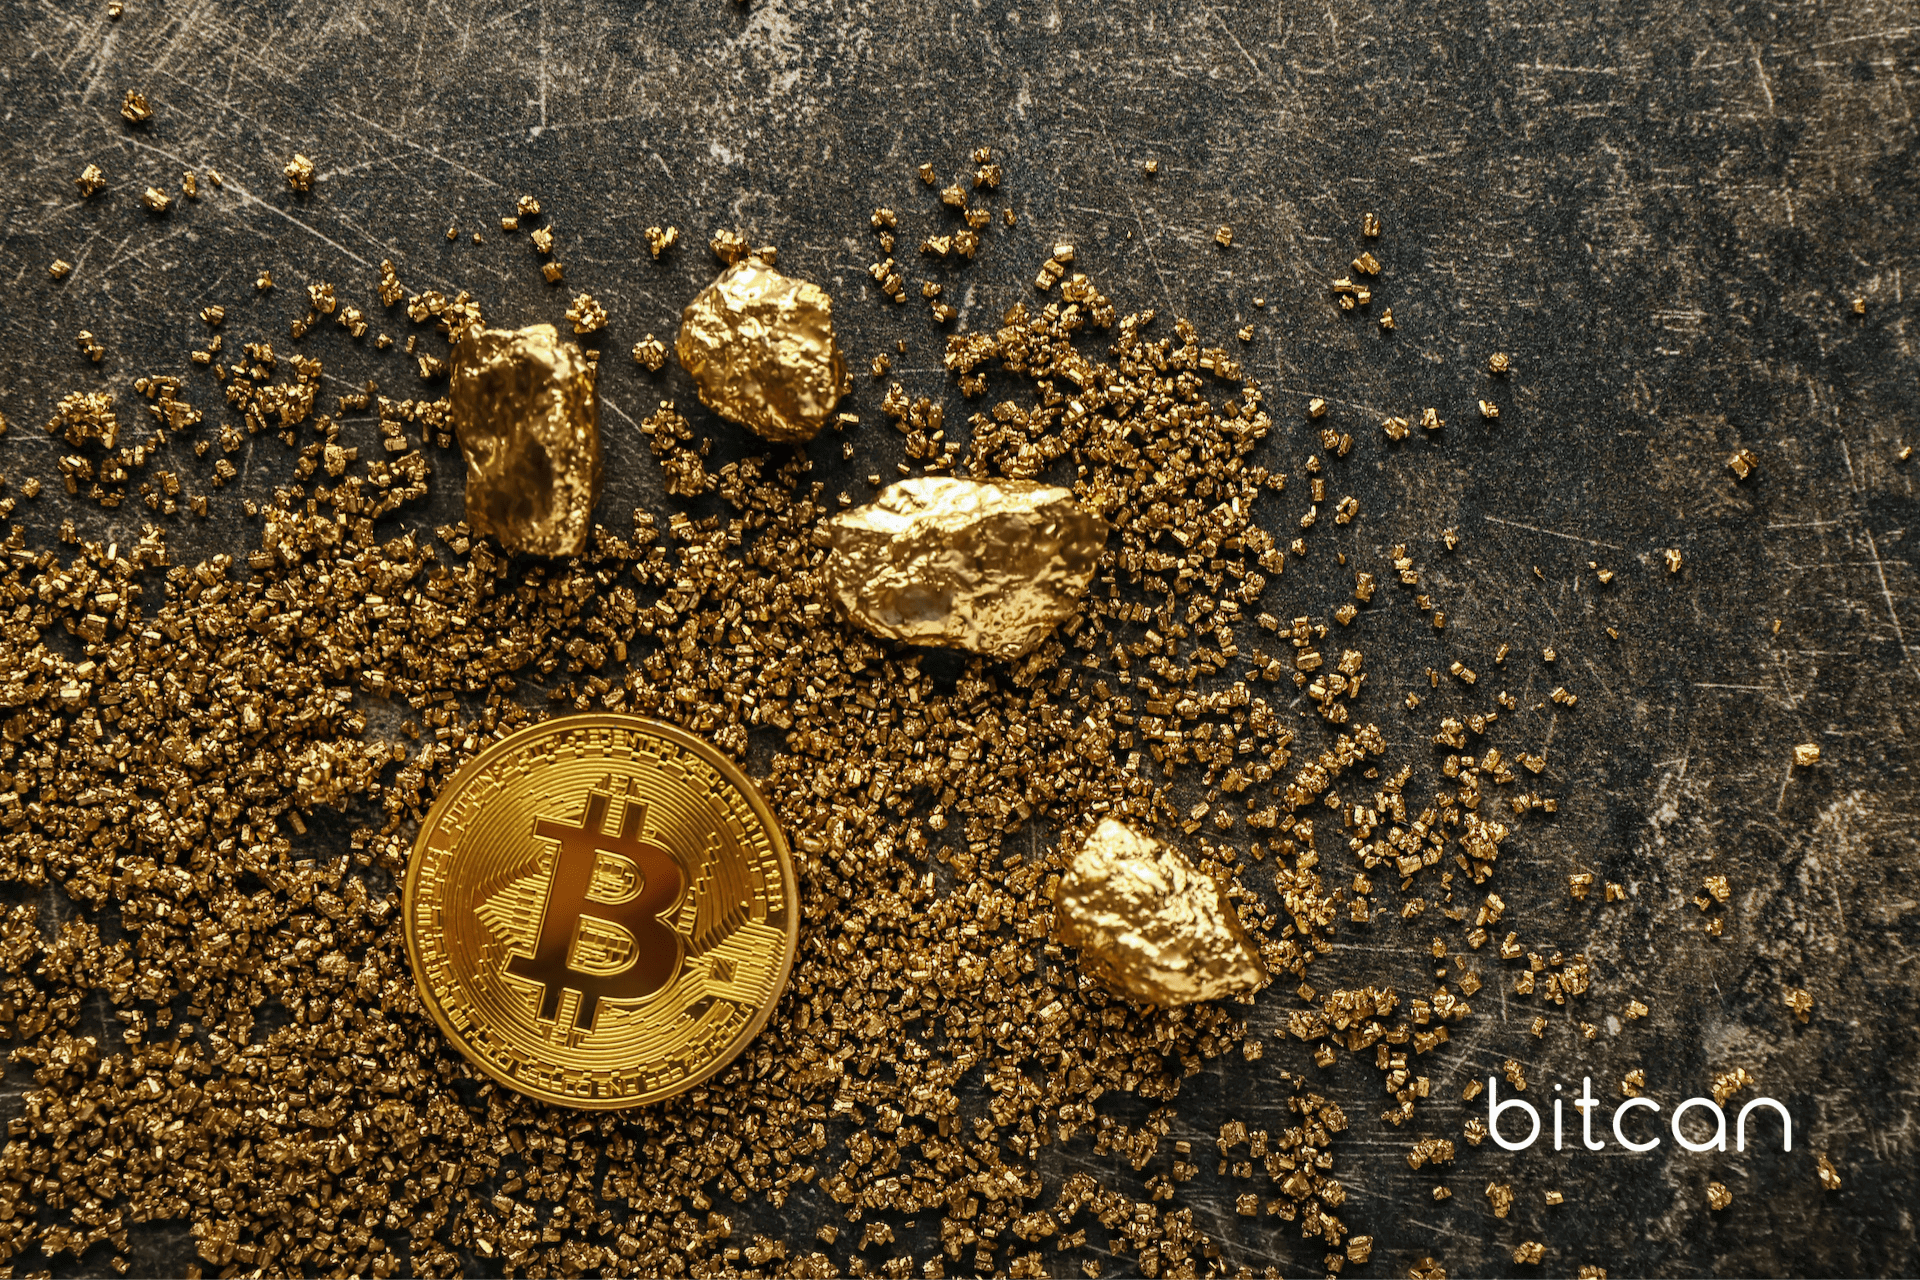 Fidelity wierzy, że bitcoin jest lepszy od złota i dolara jako „dobro monetarne”